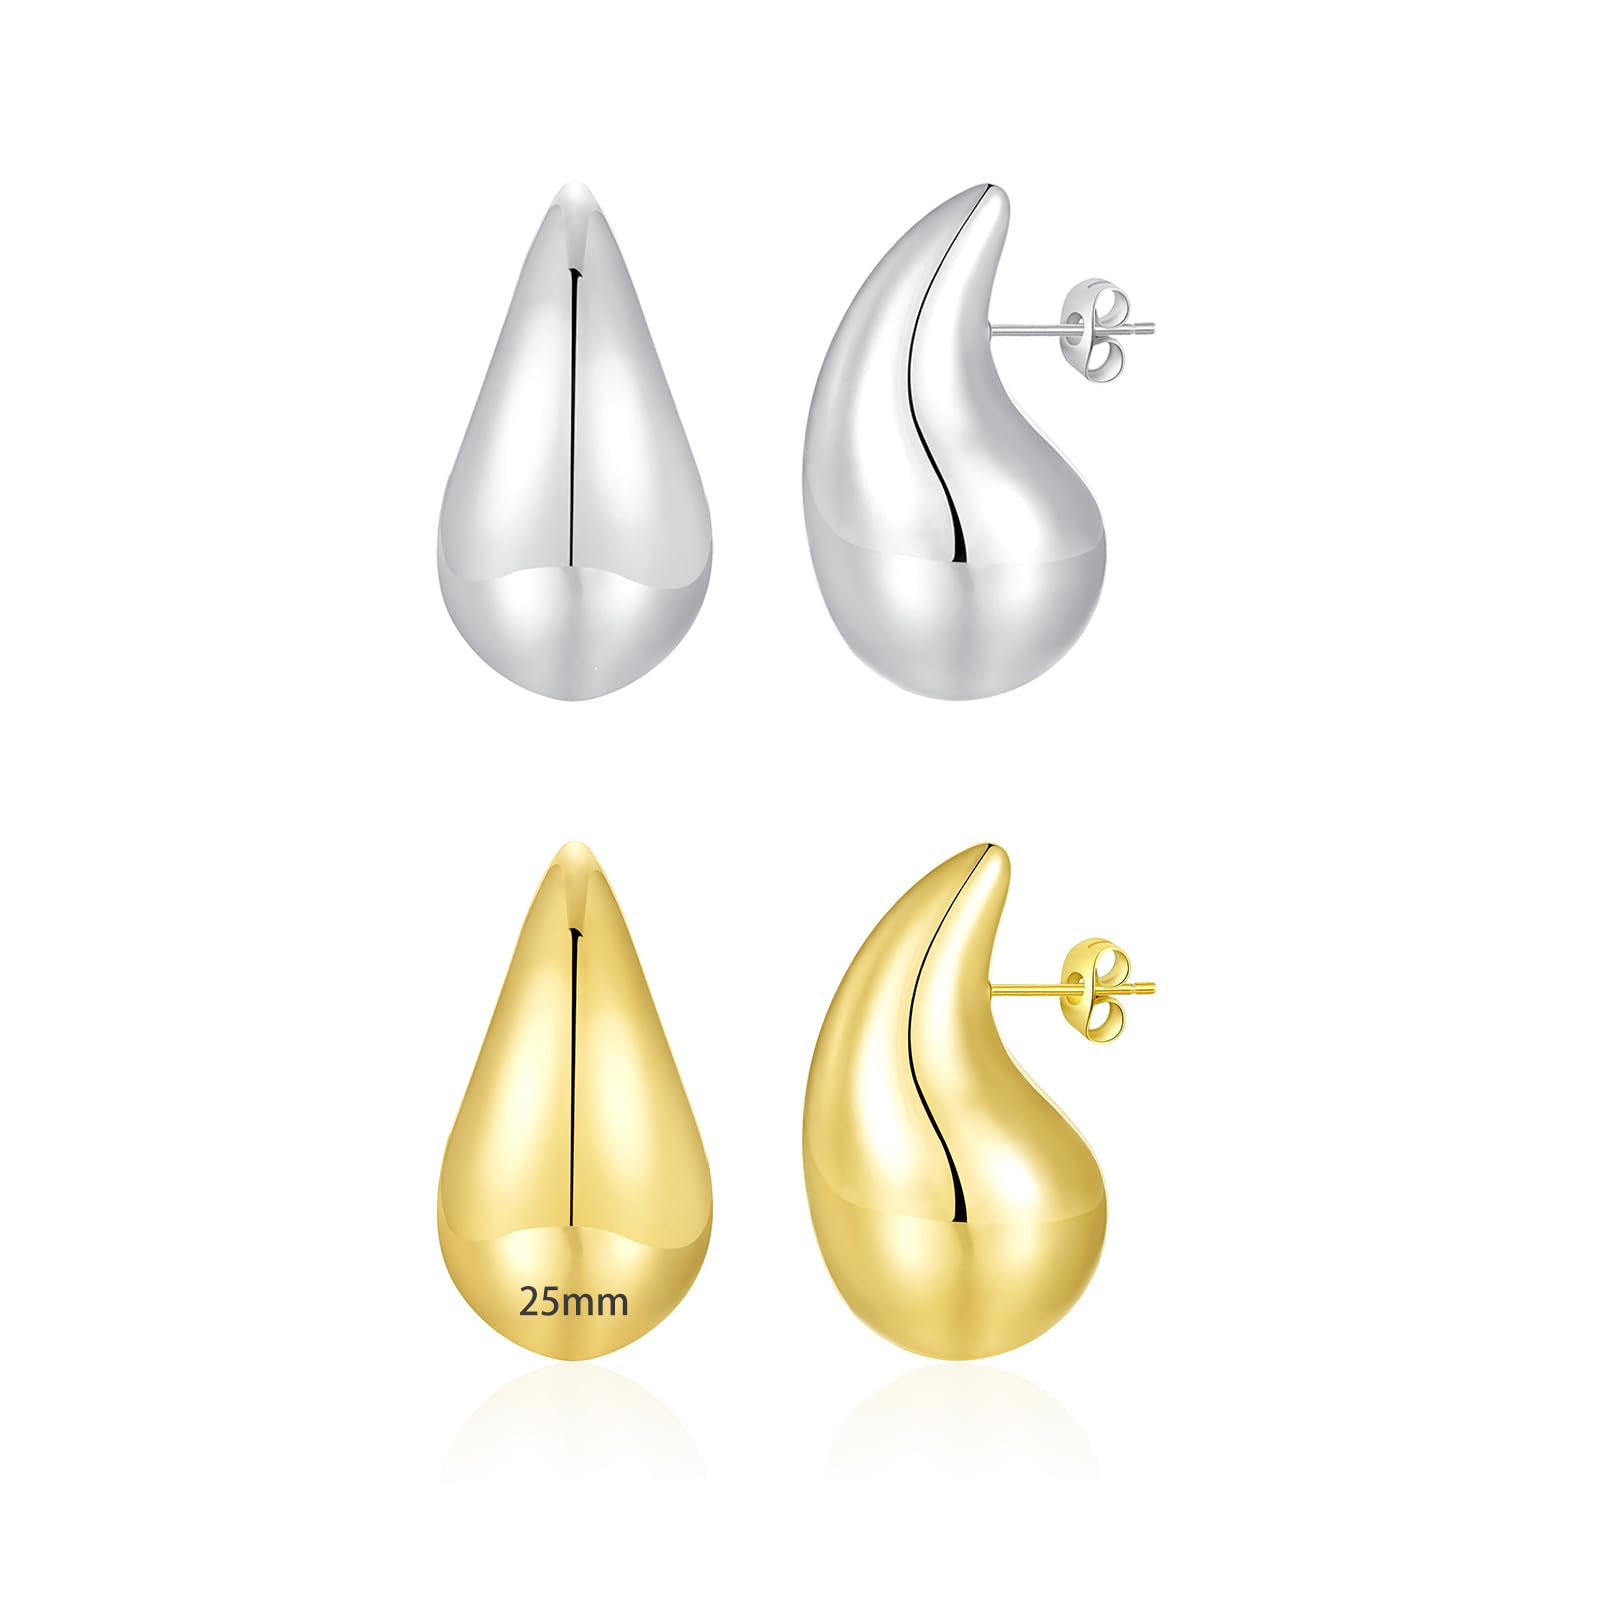 Apsvo Chunky Gold Hoop Earrings for Women, Dupes Earrings Lightweight Waterdrop Hollow Open Hoops, Hypoallergenic Gold Plated Earrings Fashion Jewelry for Women Girls